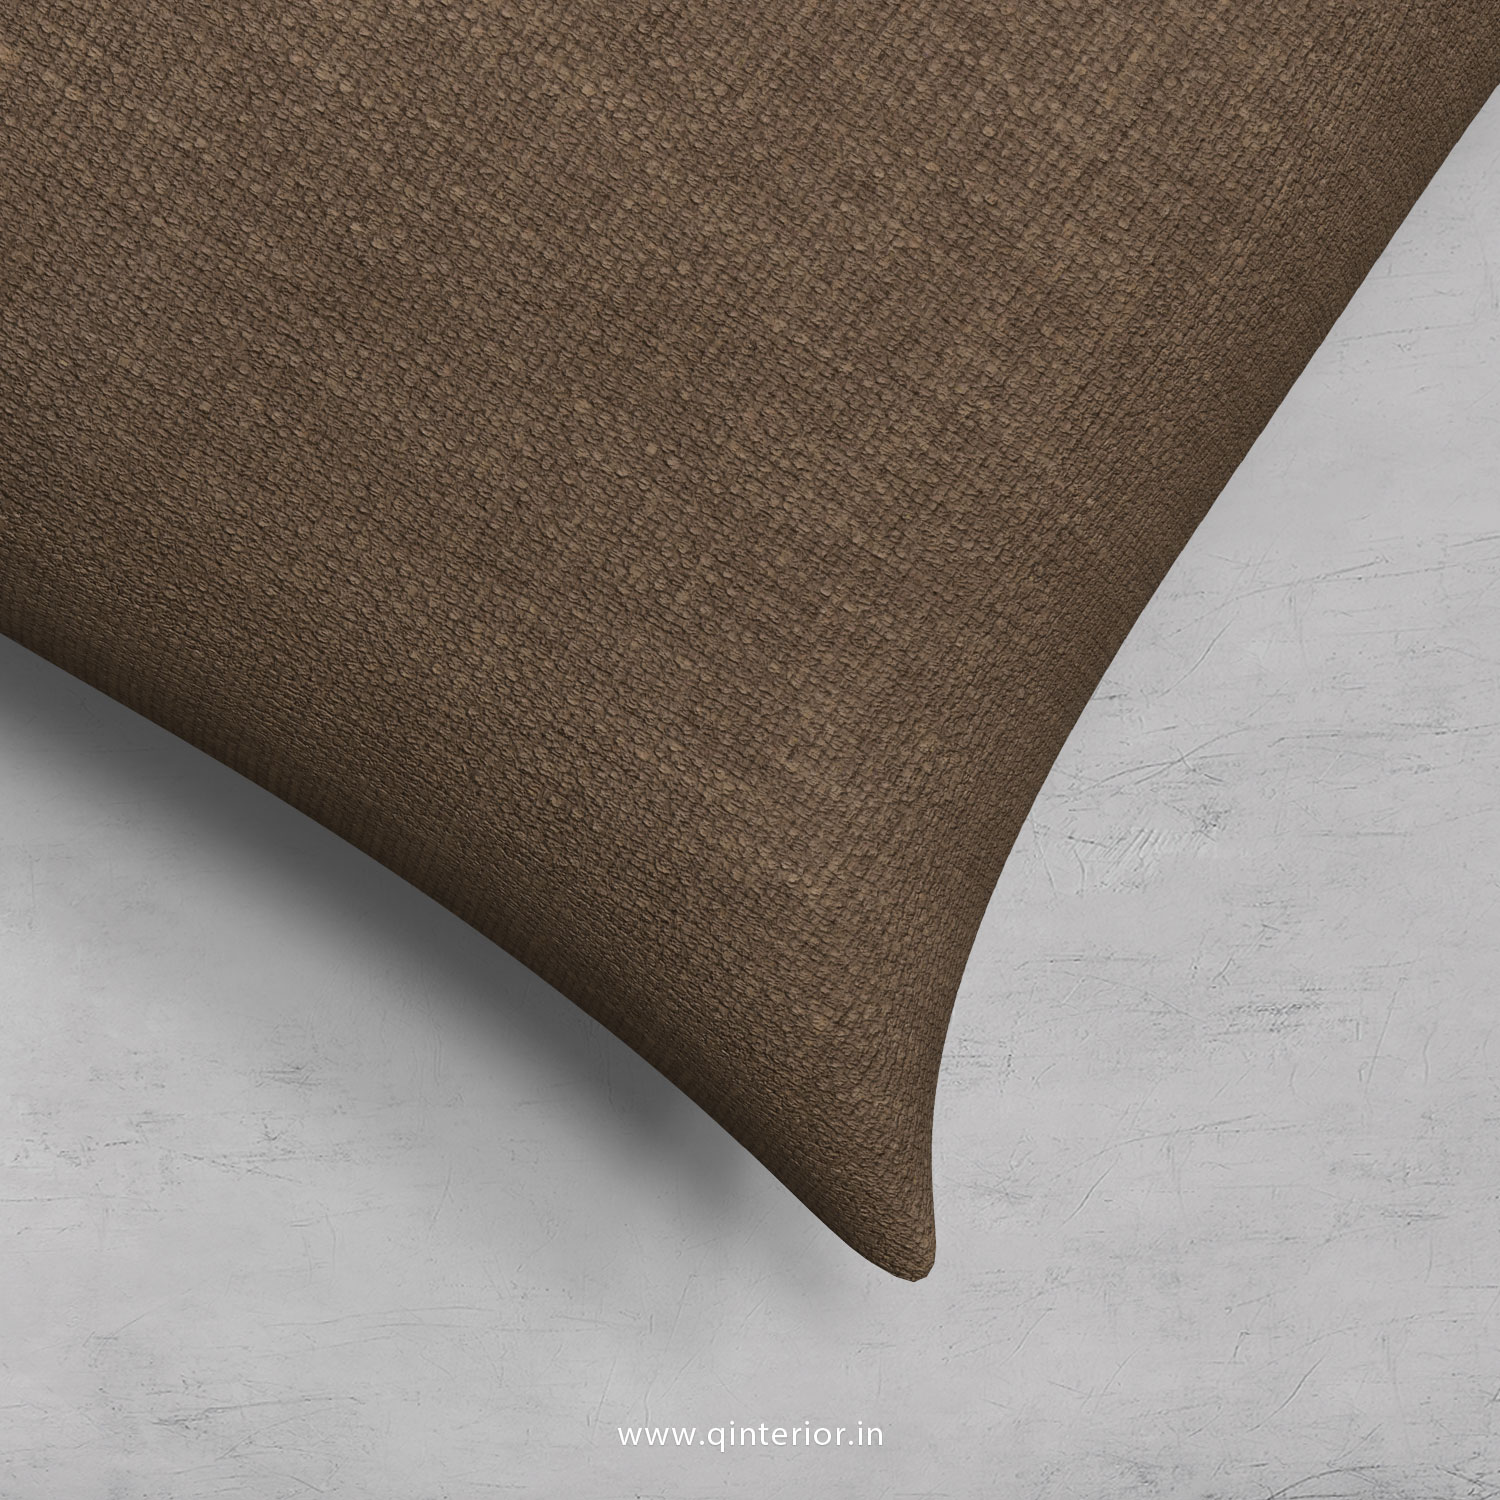 Cushion With Cushion Cover in Cotton Plain- CUS002 CP08